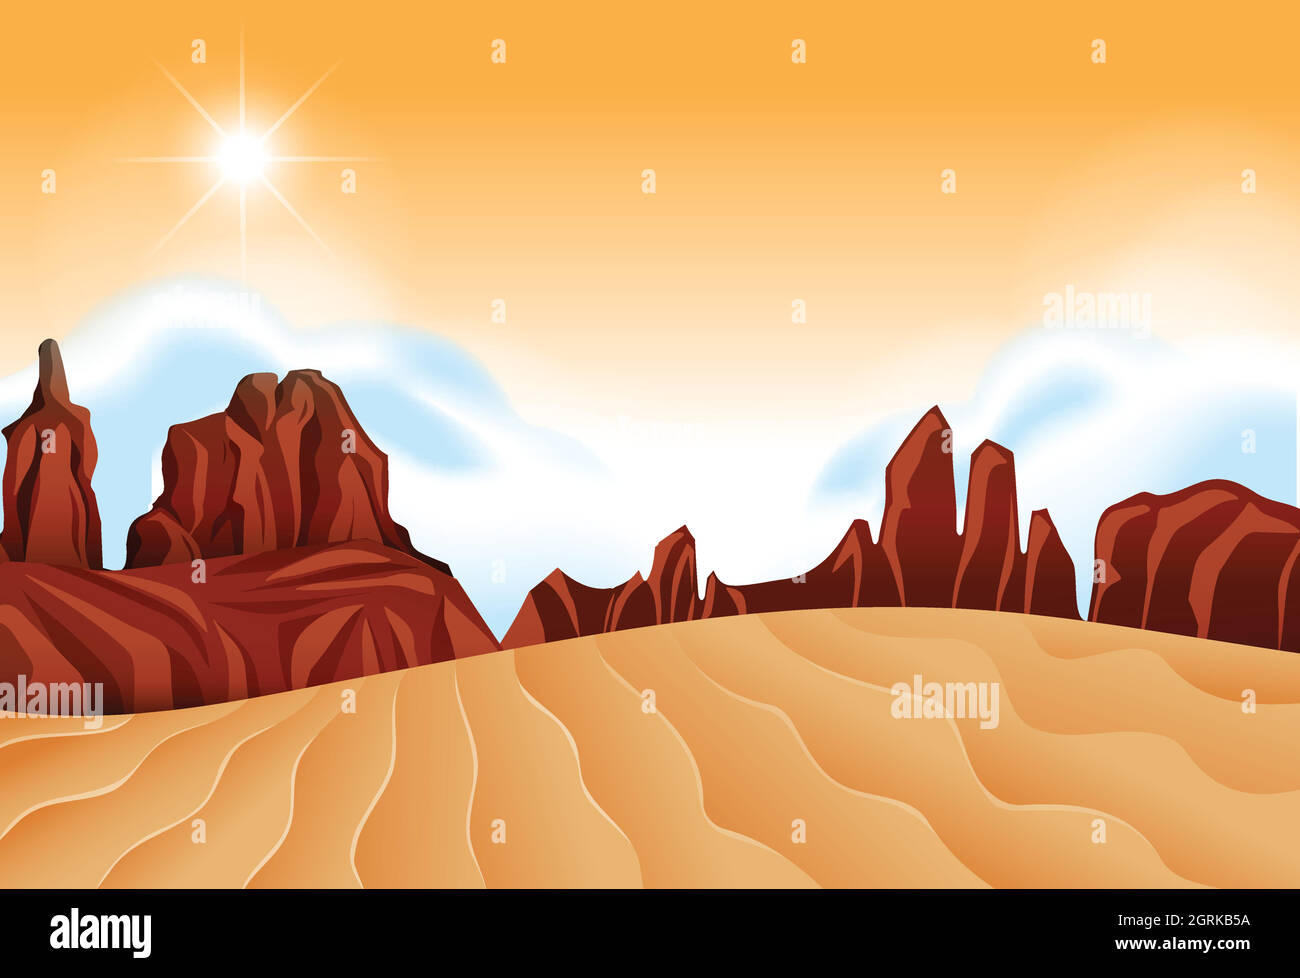 Une scène désertique isolée Illustration de Vecteur